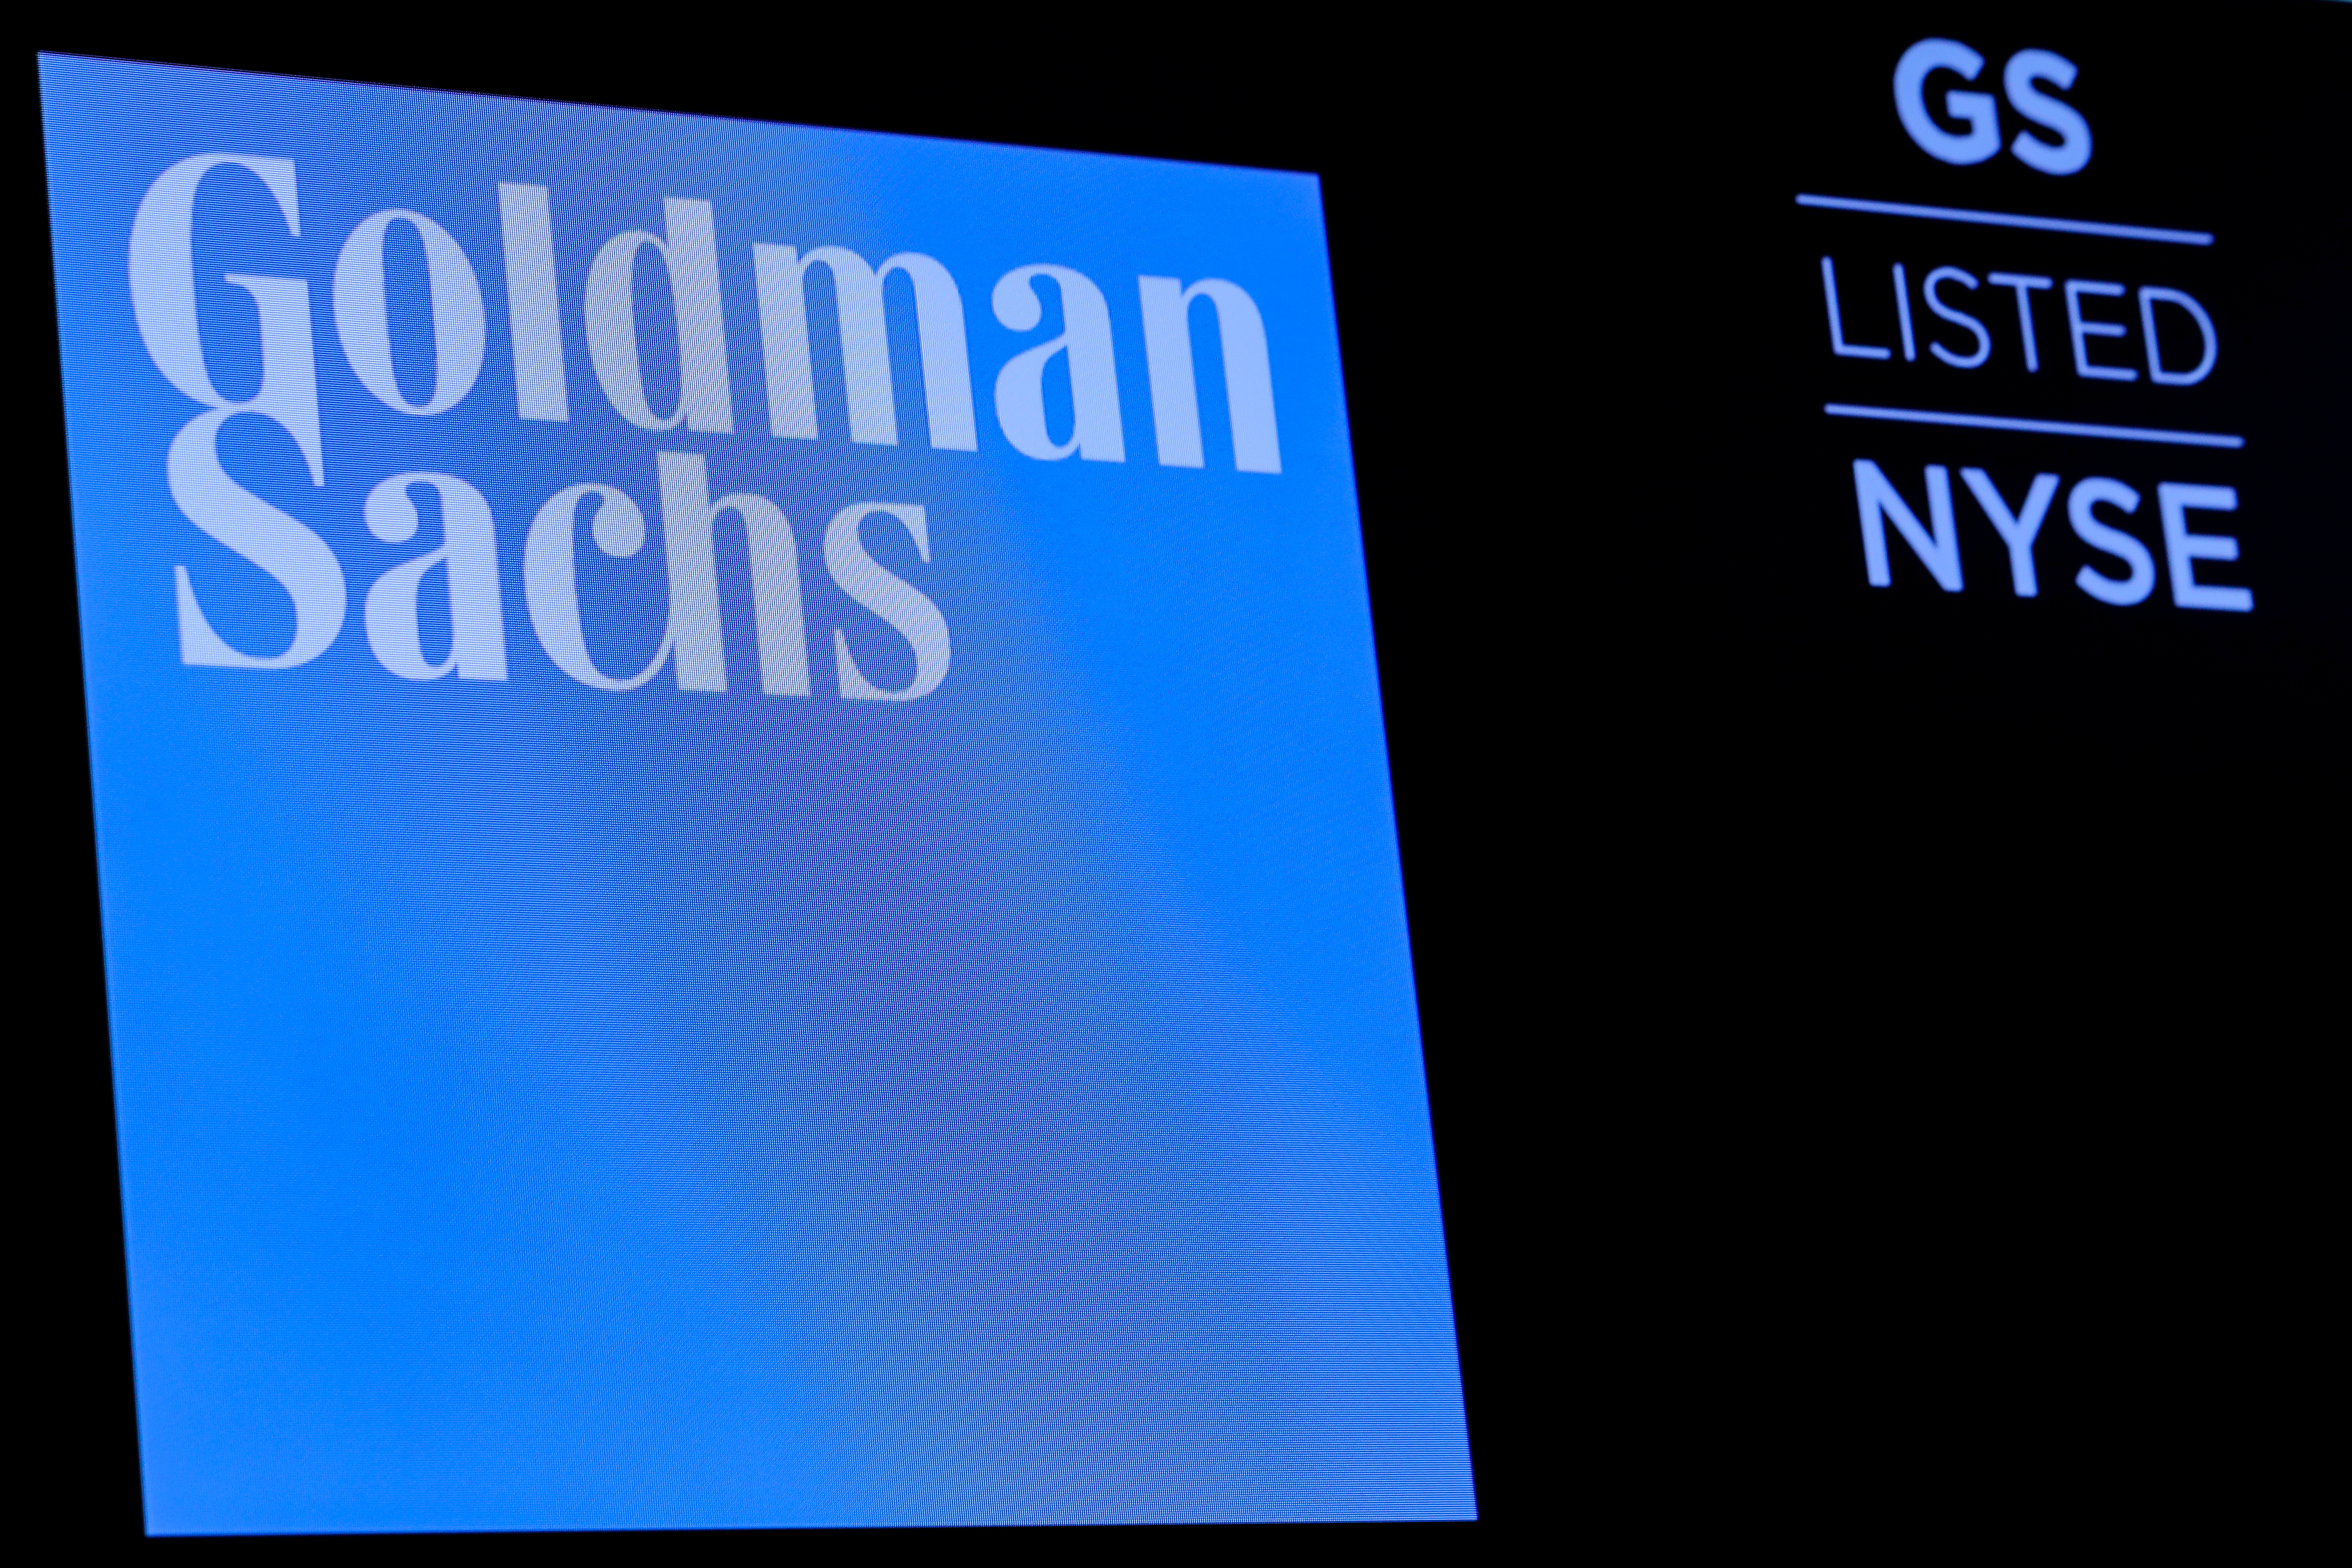 Goldman Sachs a versé 2,5 milliards à la Malaisie pour en finir avec l'affaire de corruption 1MDB